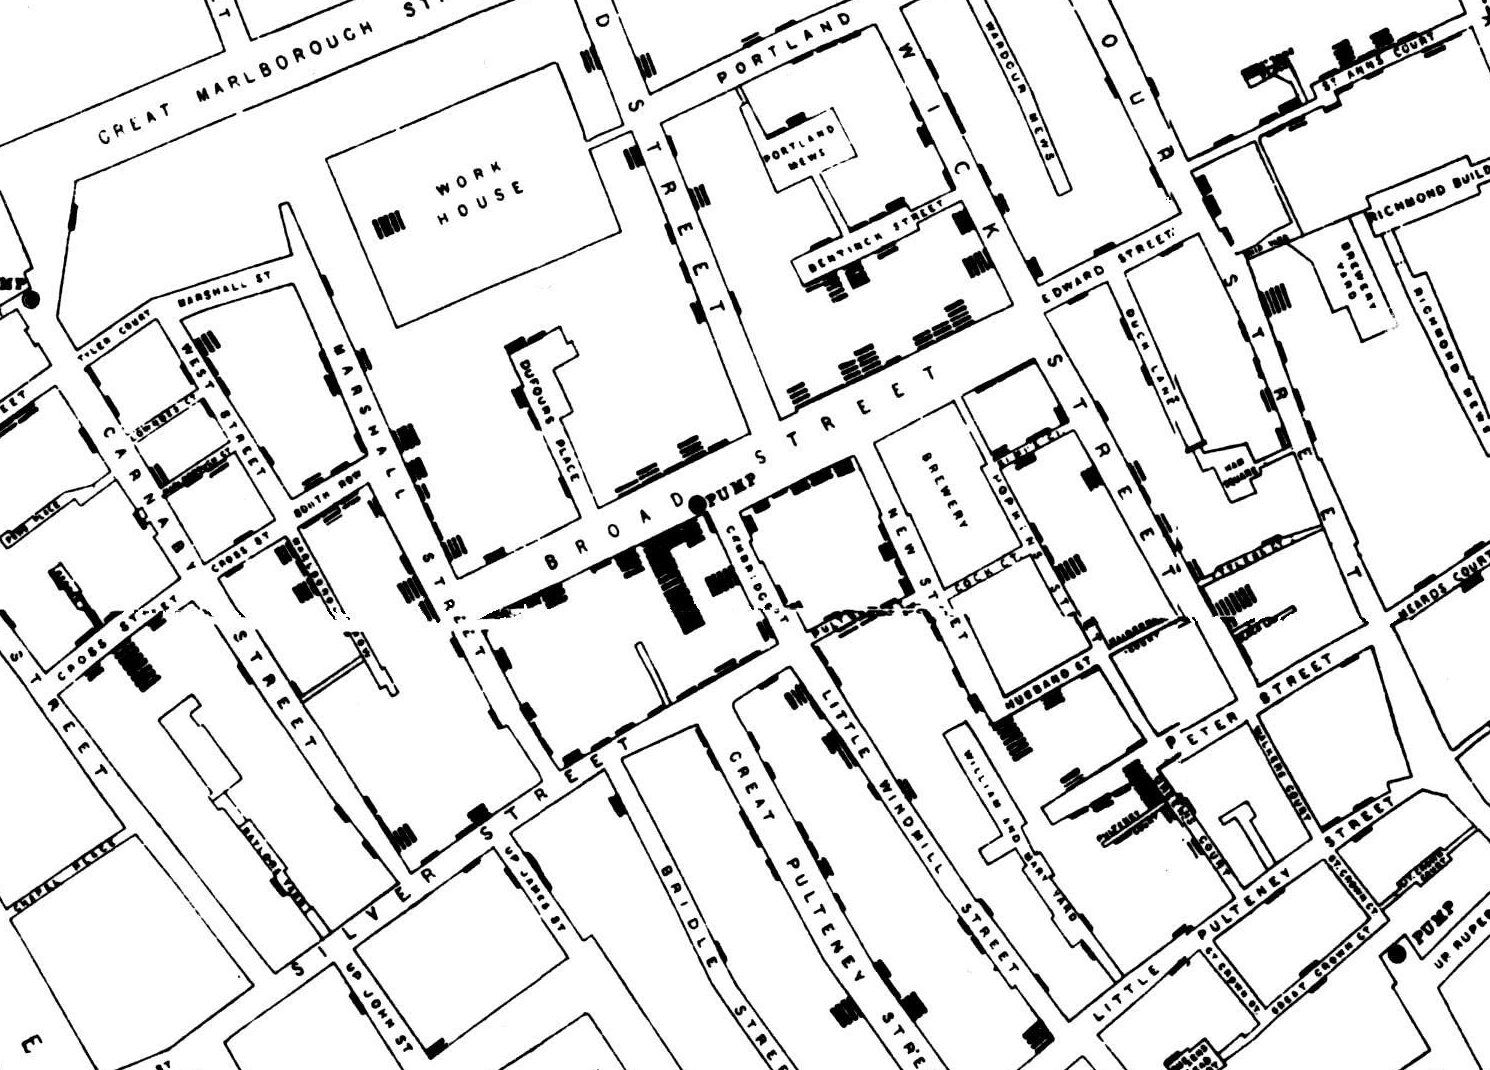 Udsnit af John Snows kort over koleradødsfald i London 1854. Den famøse Broad Street vandpumpe ses midt i billedet. Bryggeriet ses to blokke fra pumpen mod øst.